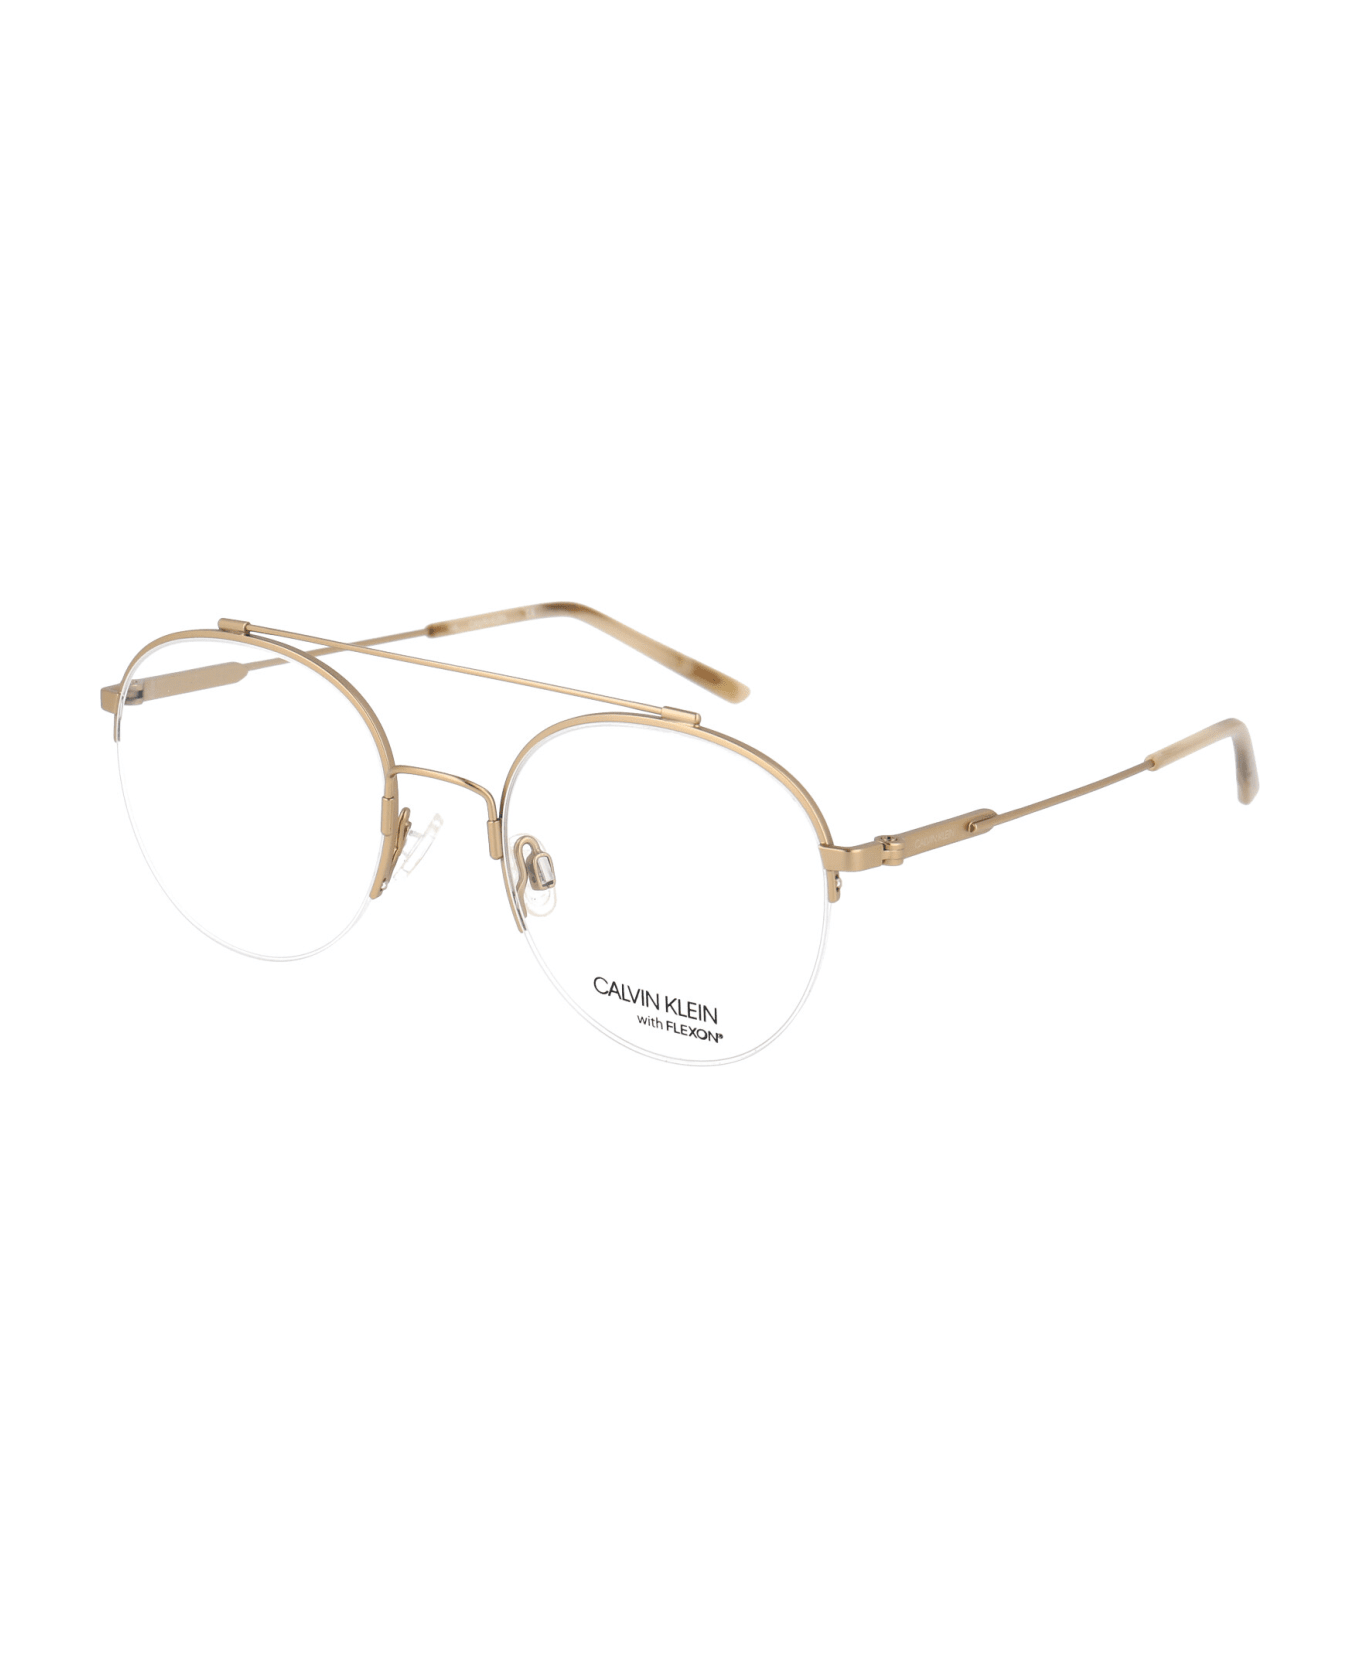 Calvin Klein Ck19144f Glasses - 716 SATIN LIGHT GOLD